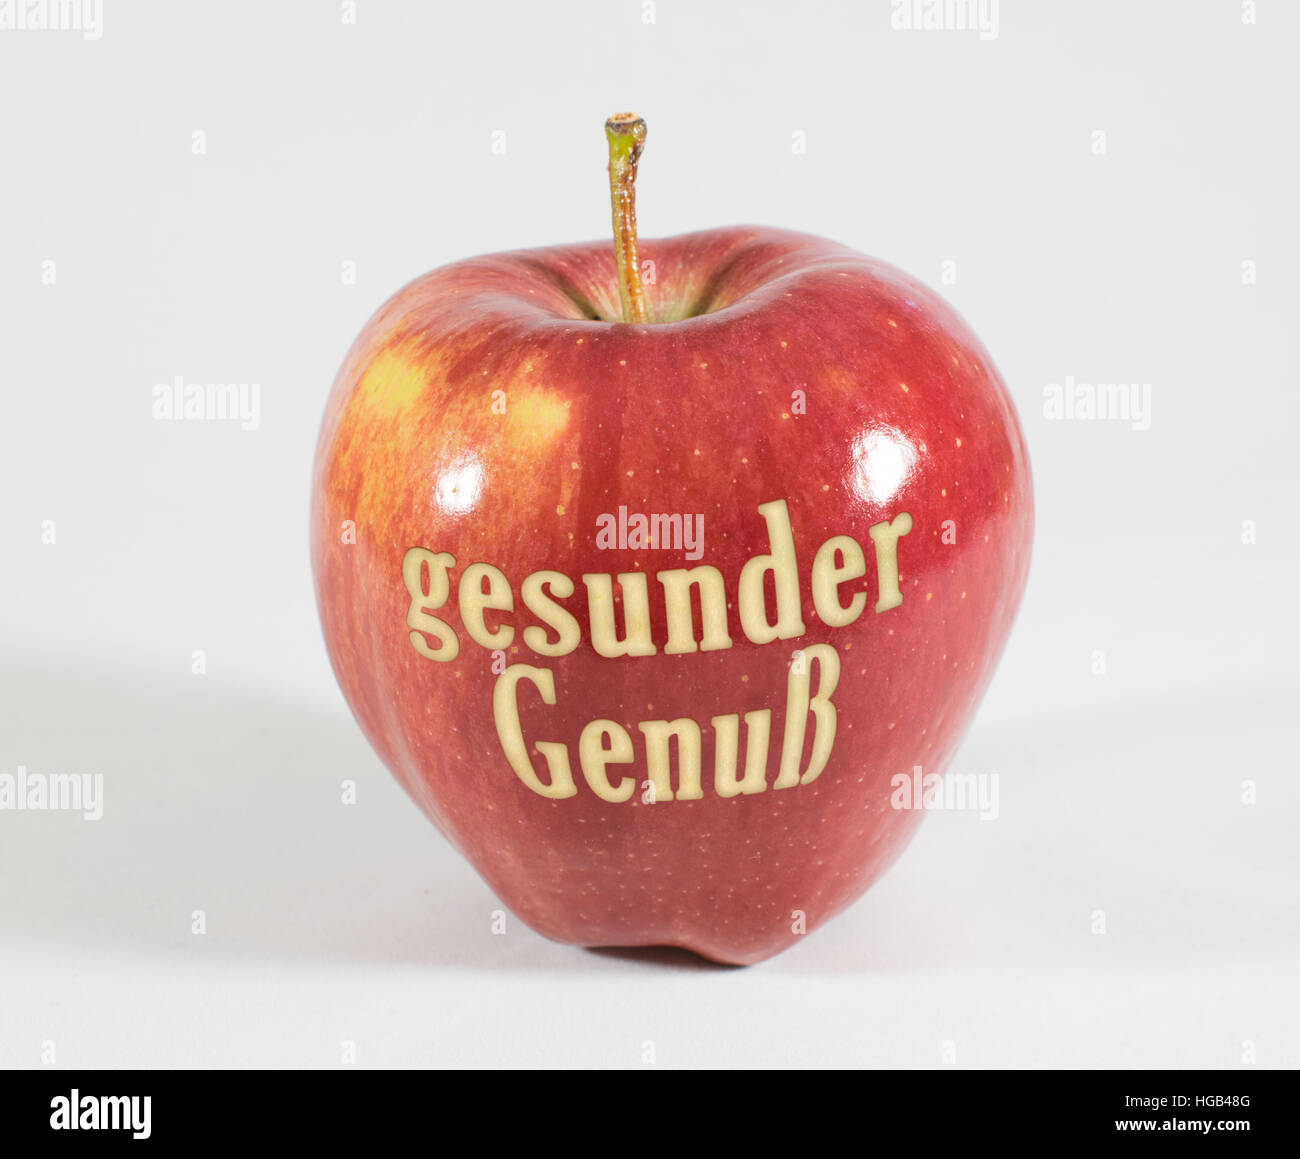 1 frische rote Apfel mit den Worten - gesunden Genuss - in deutscher Sprache auf einem weißen Hintergrund Stockfoto